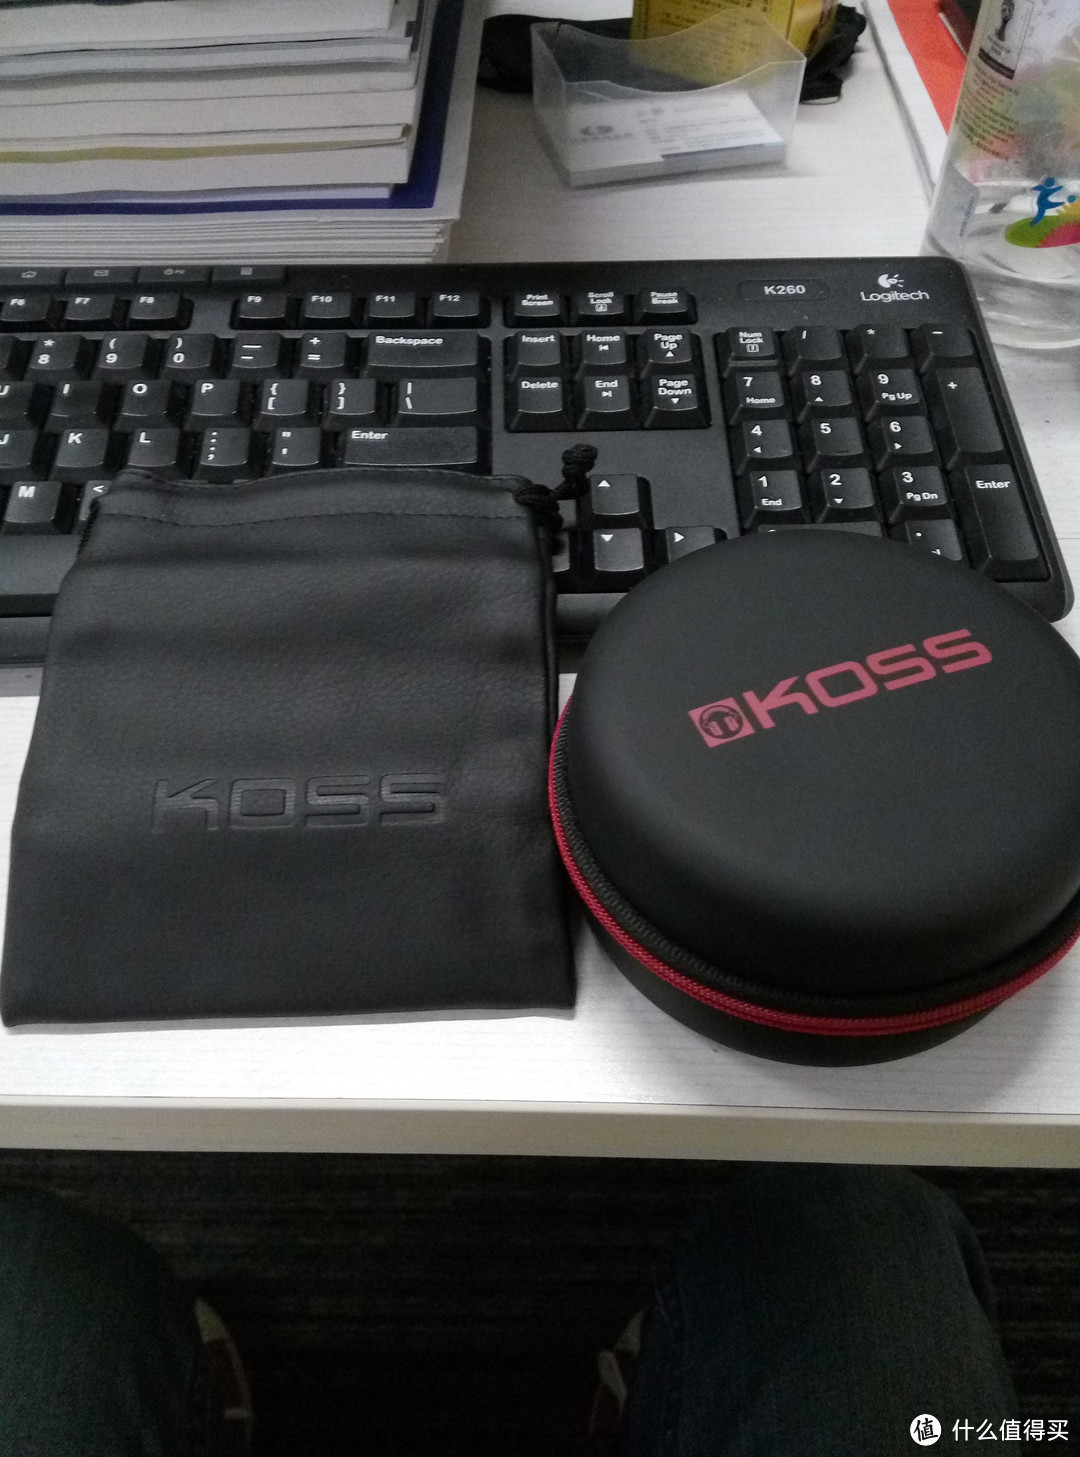 #原创新人# Koss 高斯  Porta Pro 中国红 头戴式耳机